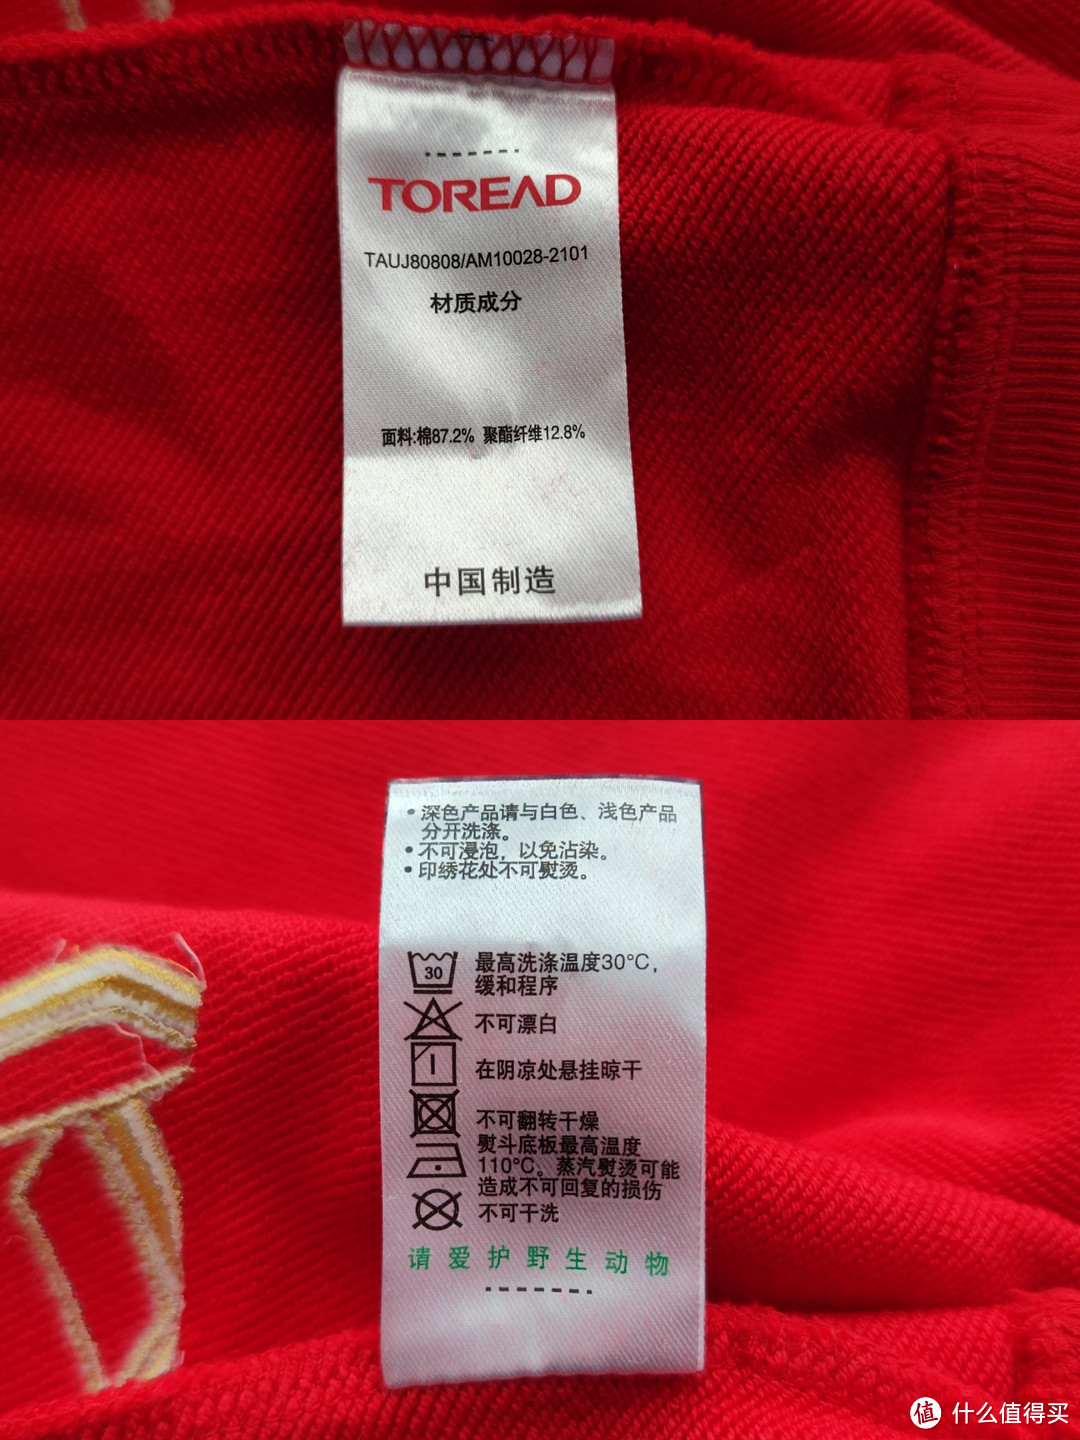 原价199元一件的探路者卫衣，我只花了33.71元就买到了！现在还可以买到！不过涨价到50元一件了！